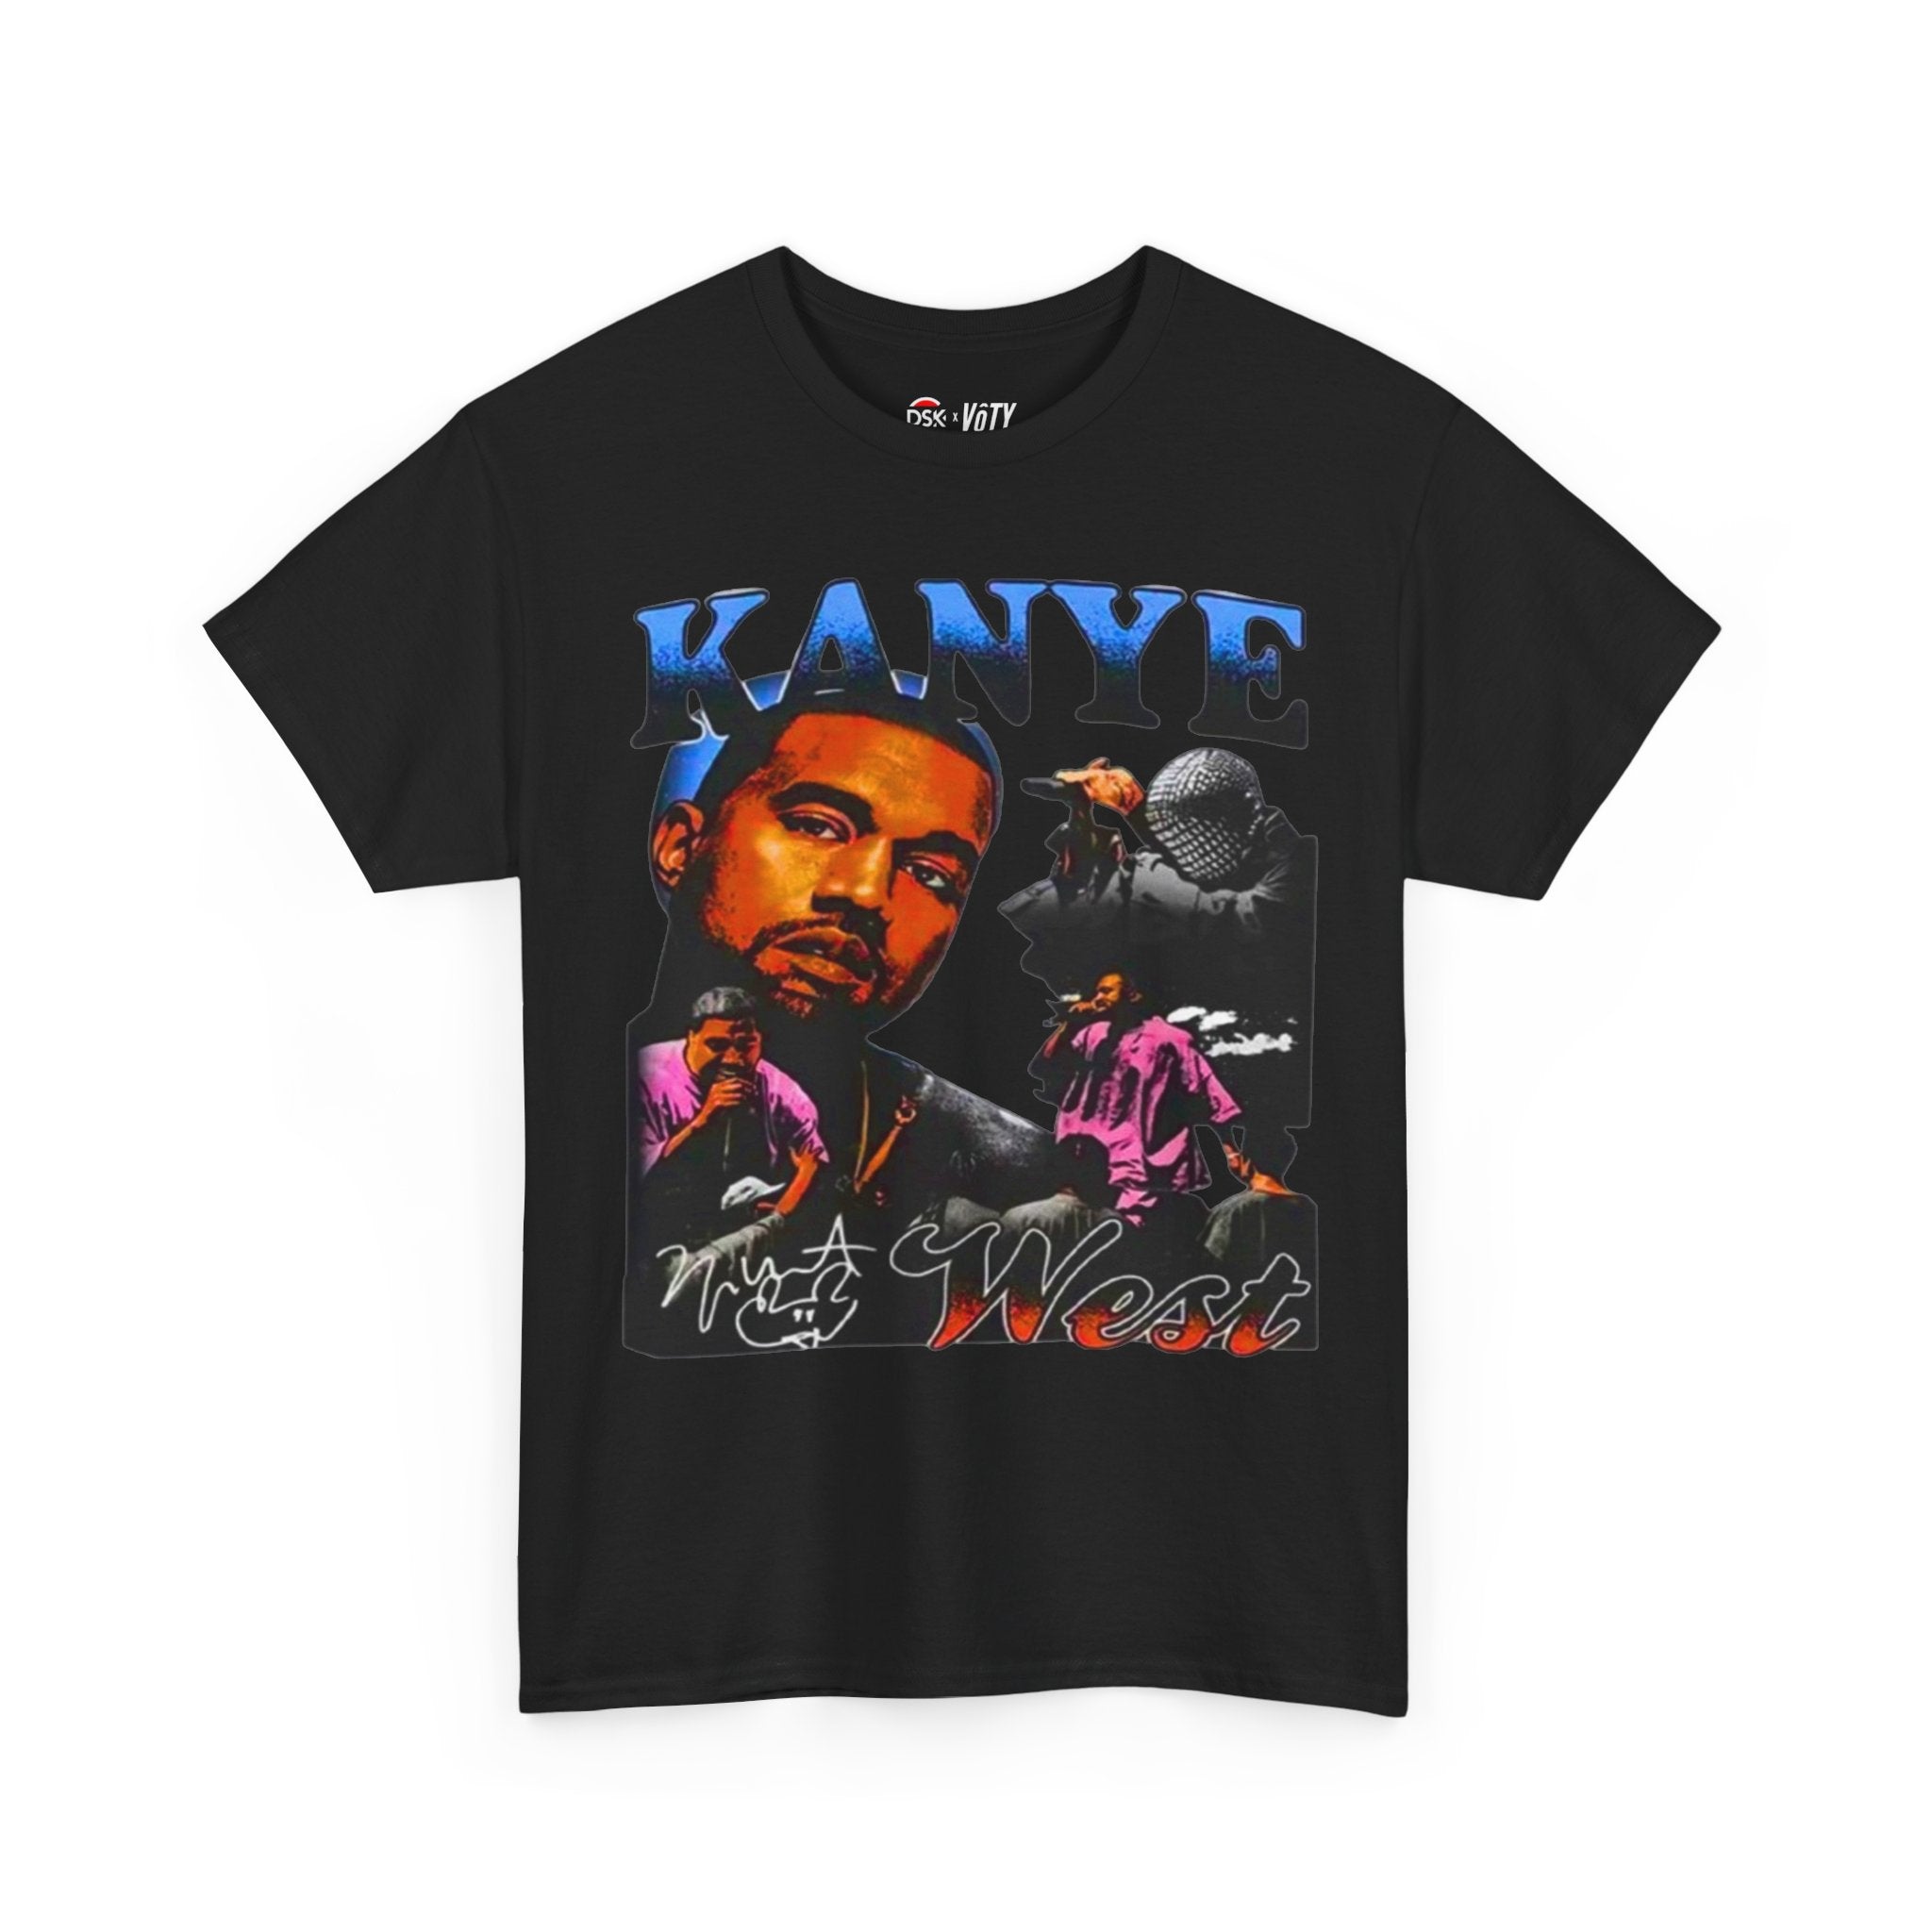 Kanye West T-shirt